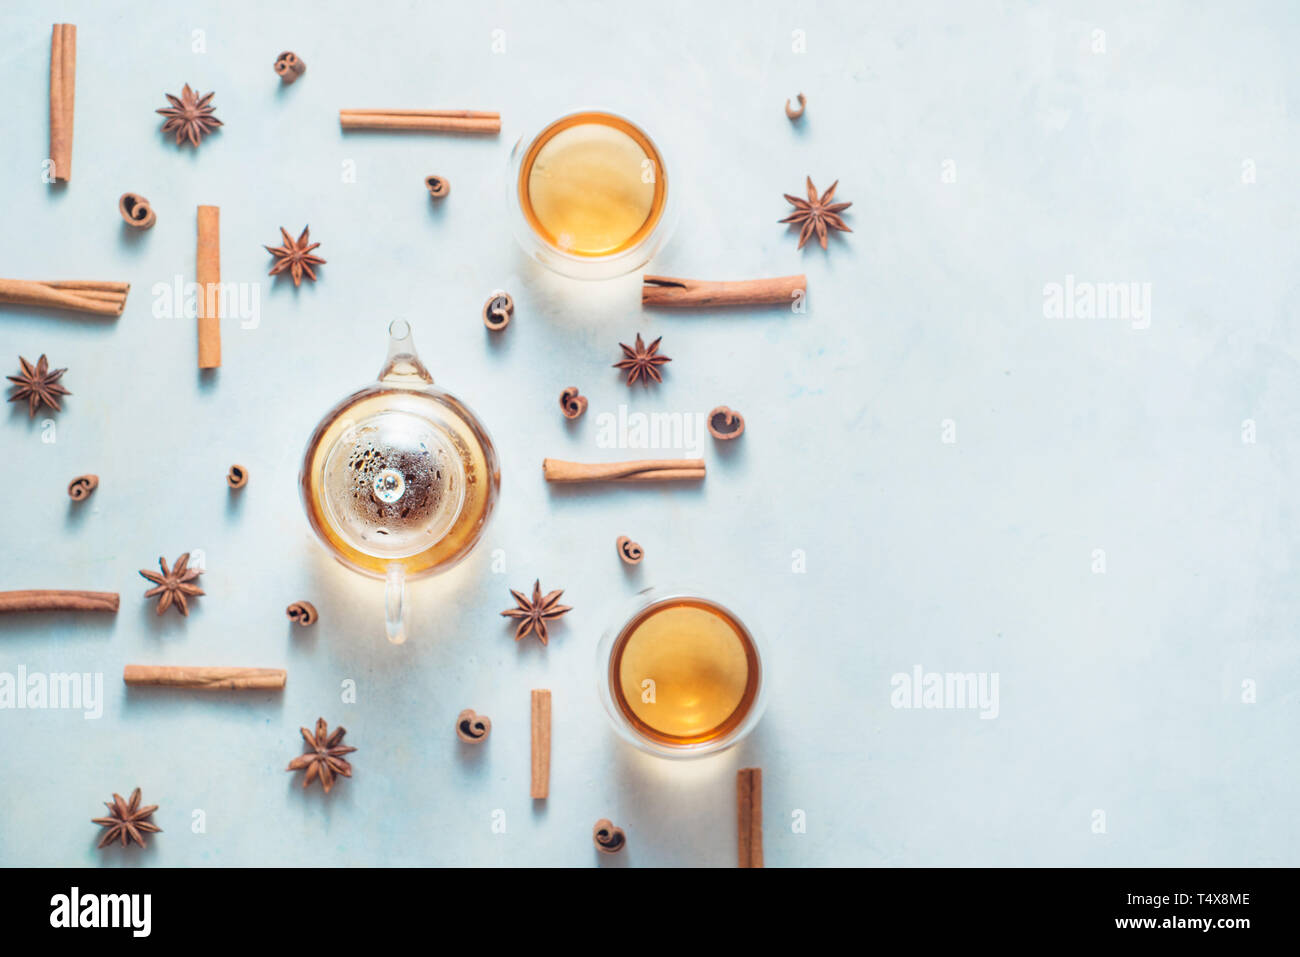 Kreative Kaffee mit Zimt, Anis Sterne, Teekanne und Tee klangschalen auf einen weißen Hintergrund mit kopieren. Heißes Getränk creative Flach. Stockfoto